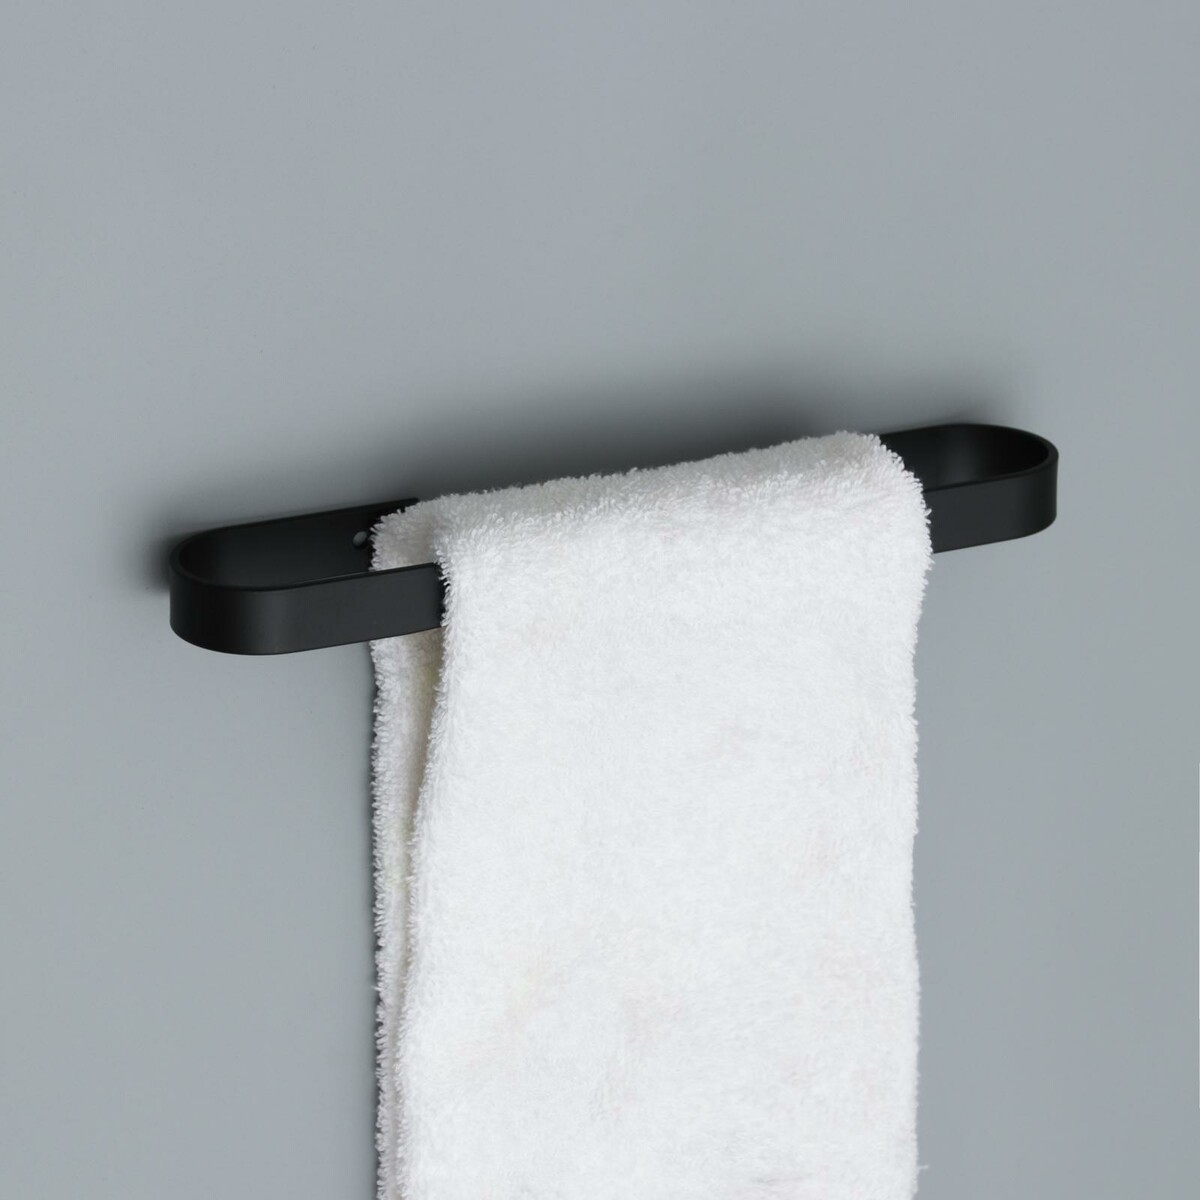 Держатель для полотенец штольц stölz, 24×6 см, цвет черный держатель brabantia для полотенец настенный 62 4 см